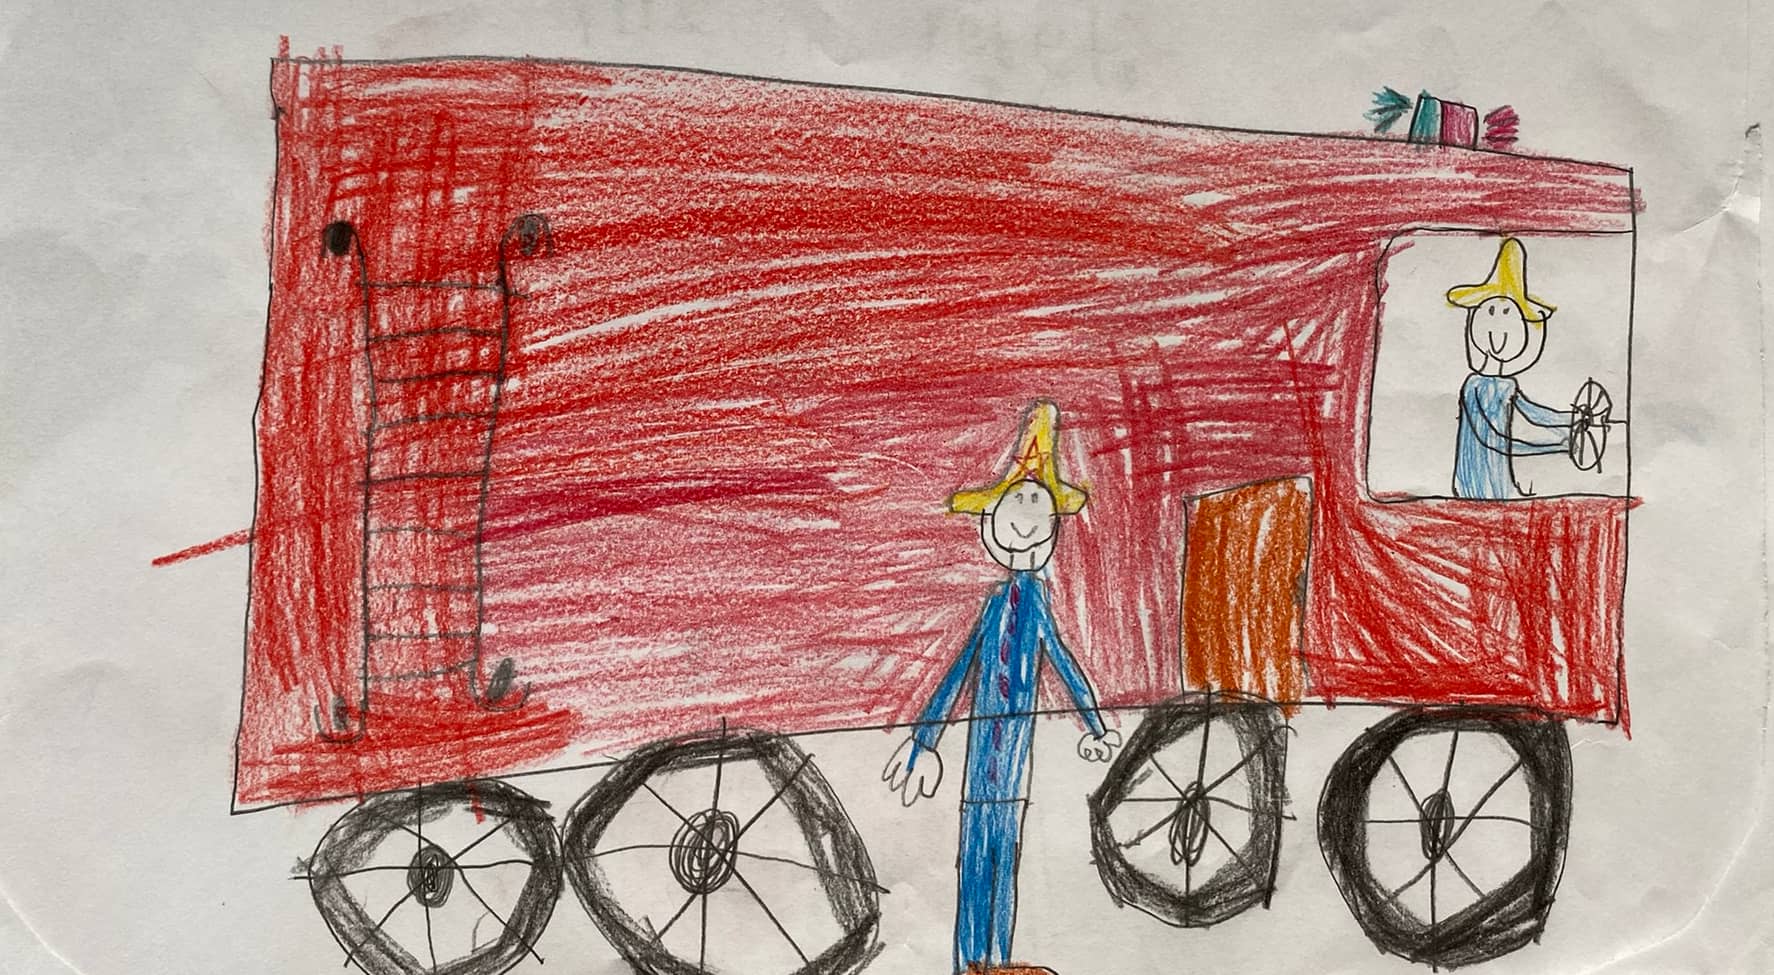 Nach dem Brandanschlag von Ratingen am 11. Mai haben Kinder den Einsatzkräften bunte Zeichnungen geschickt. Über diesem Bild steht: "Ich finde euch toll!"